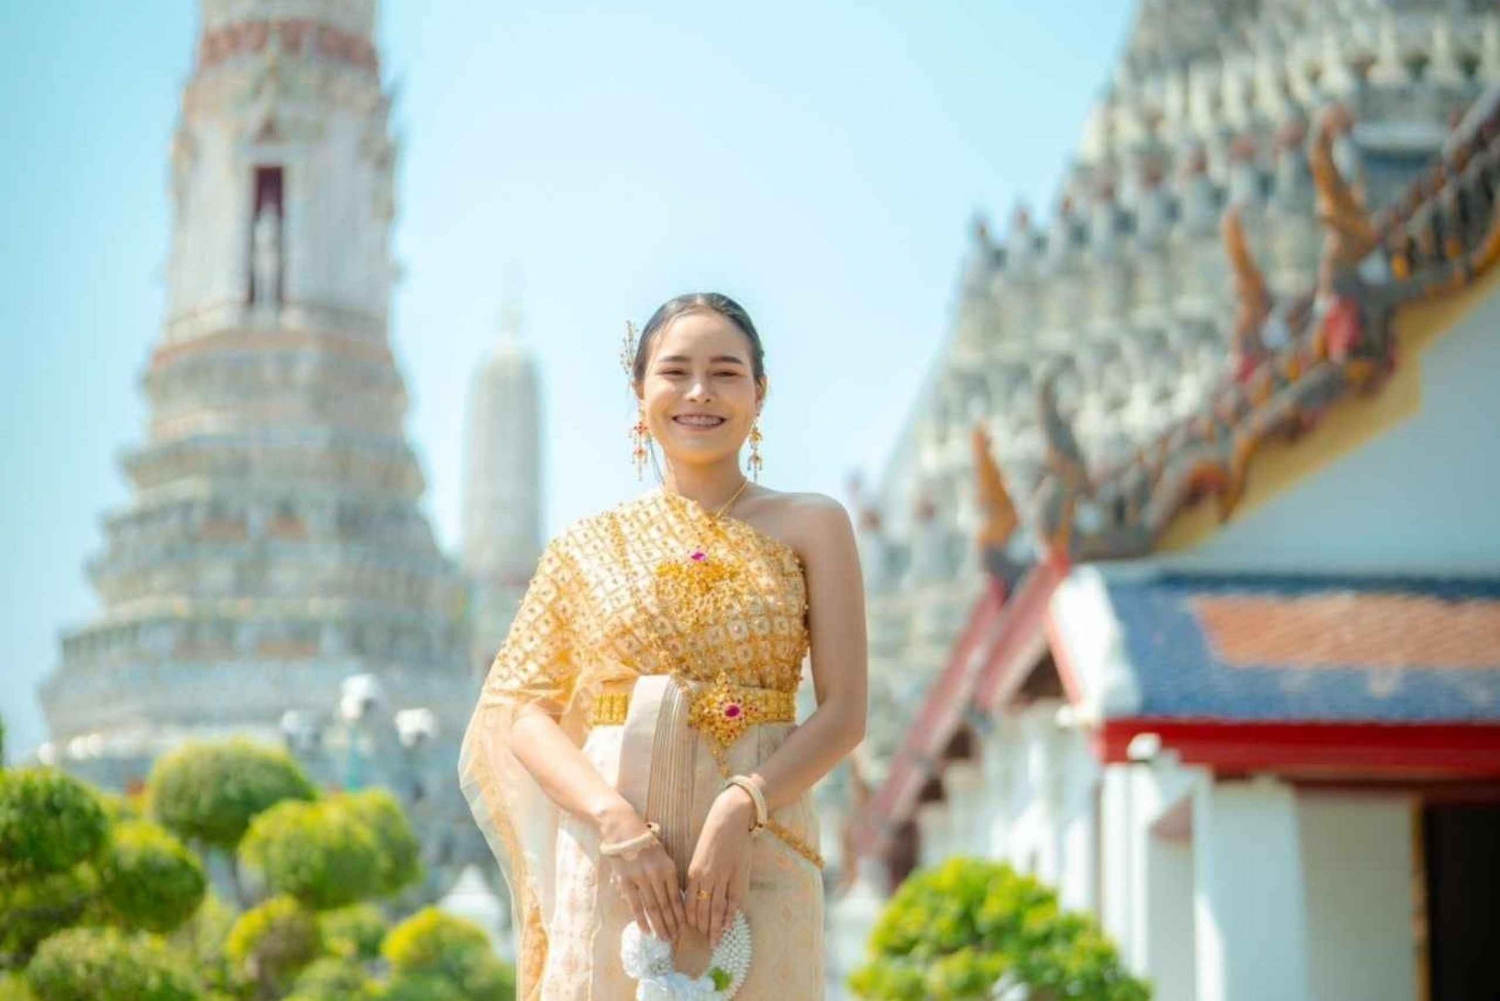 Thaise traditionele kostuumverhuur & hairstyling bij Wat Arun